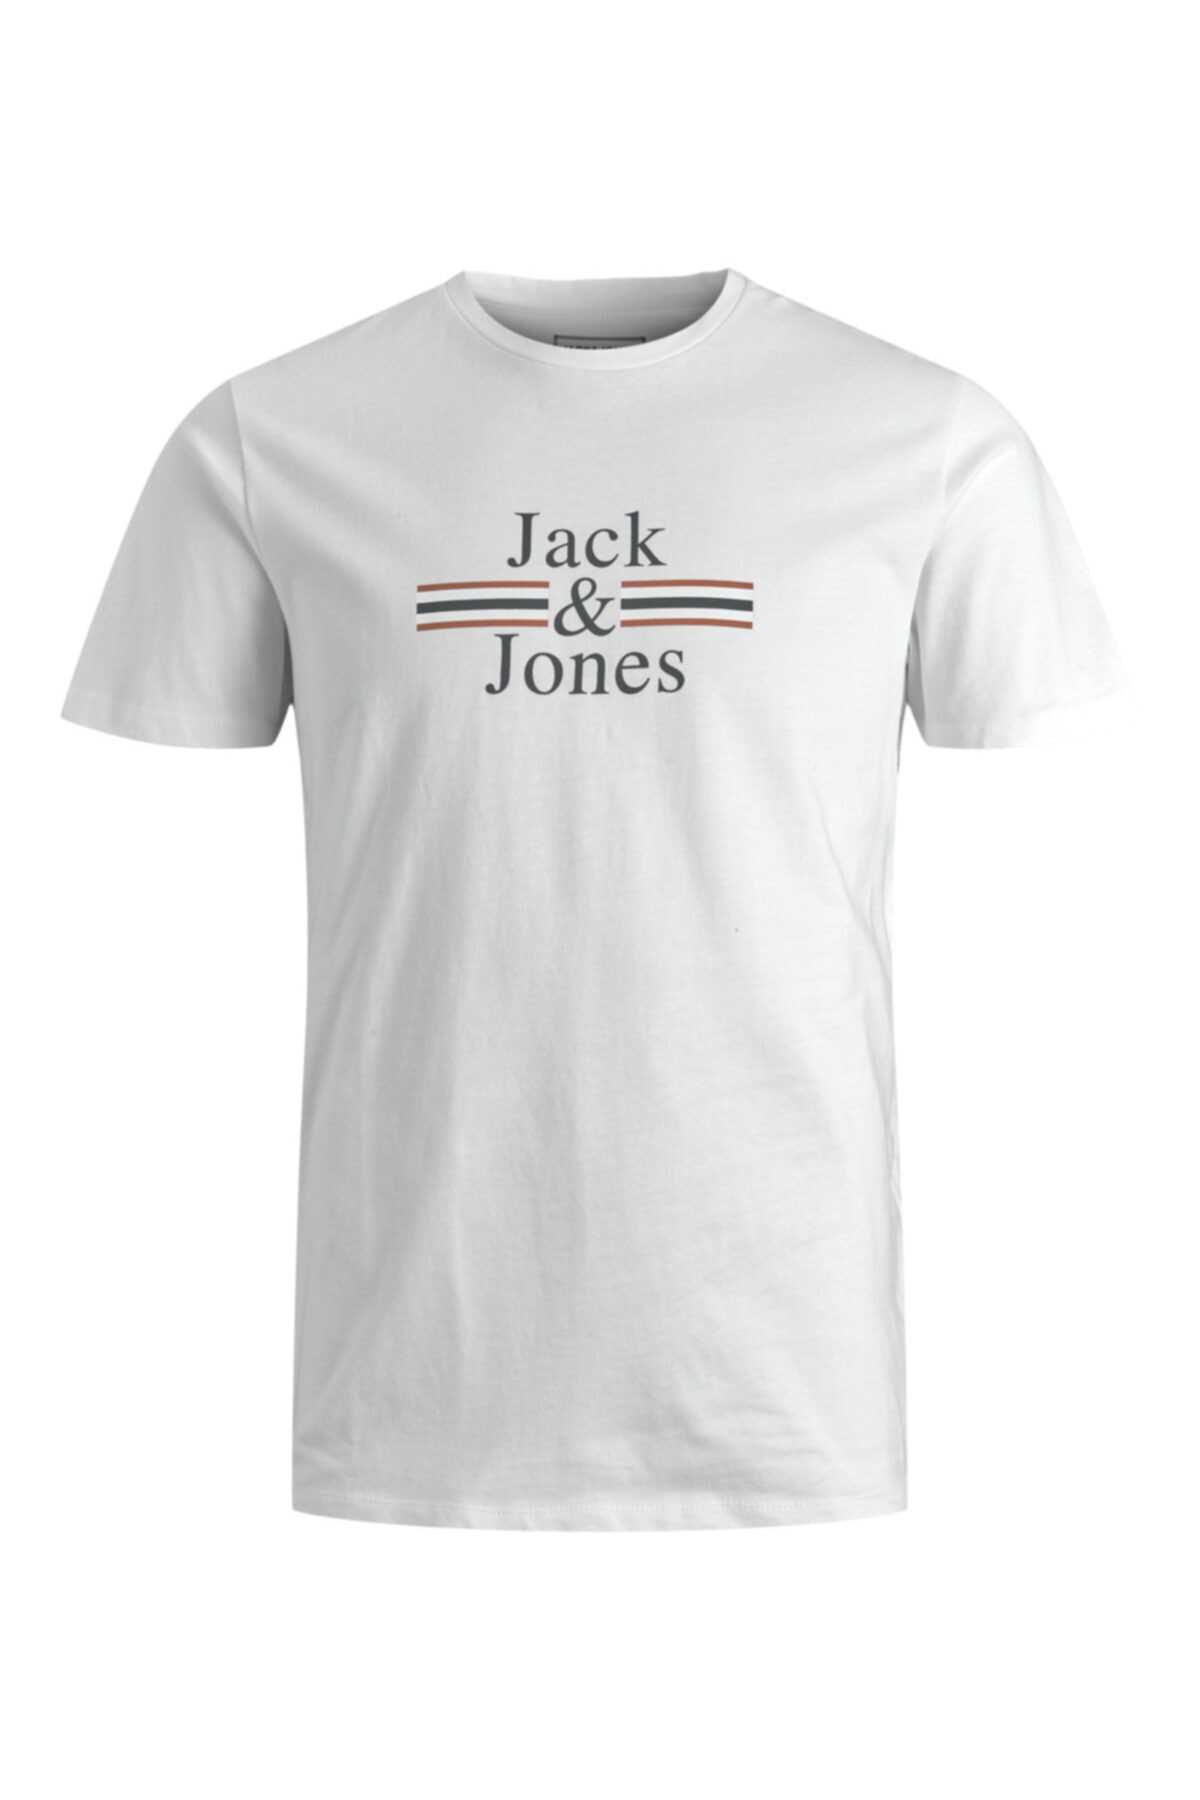 سفارش انلاین تی شرت مردانه ساده مارک جک اند جونز کد ty97209965